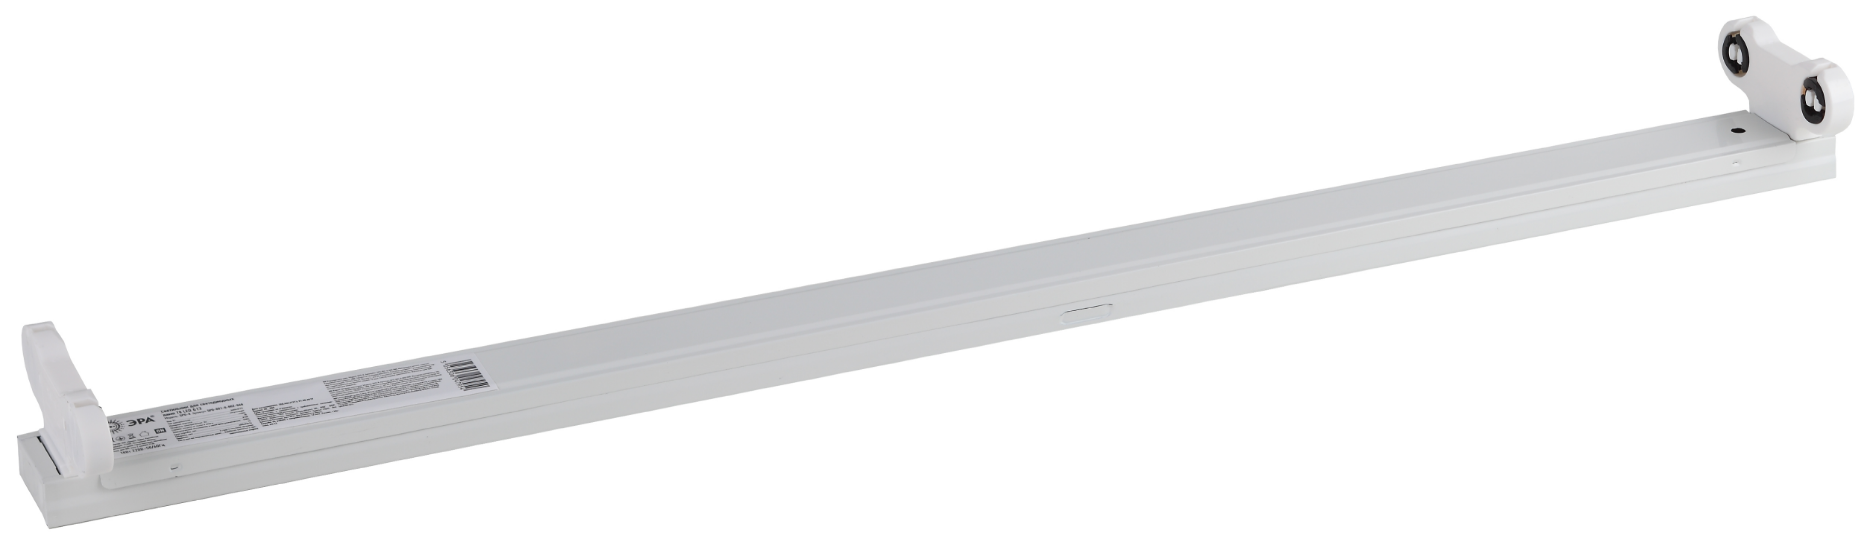 Купить светильник под 2 светодиодные лампы "эра" spo-801-0-002-060 t8 g13 (60см) | КилоВатт